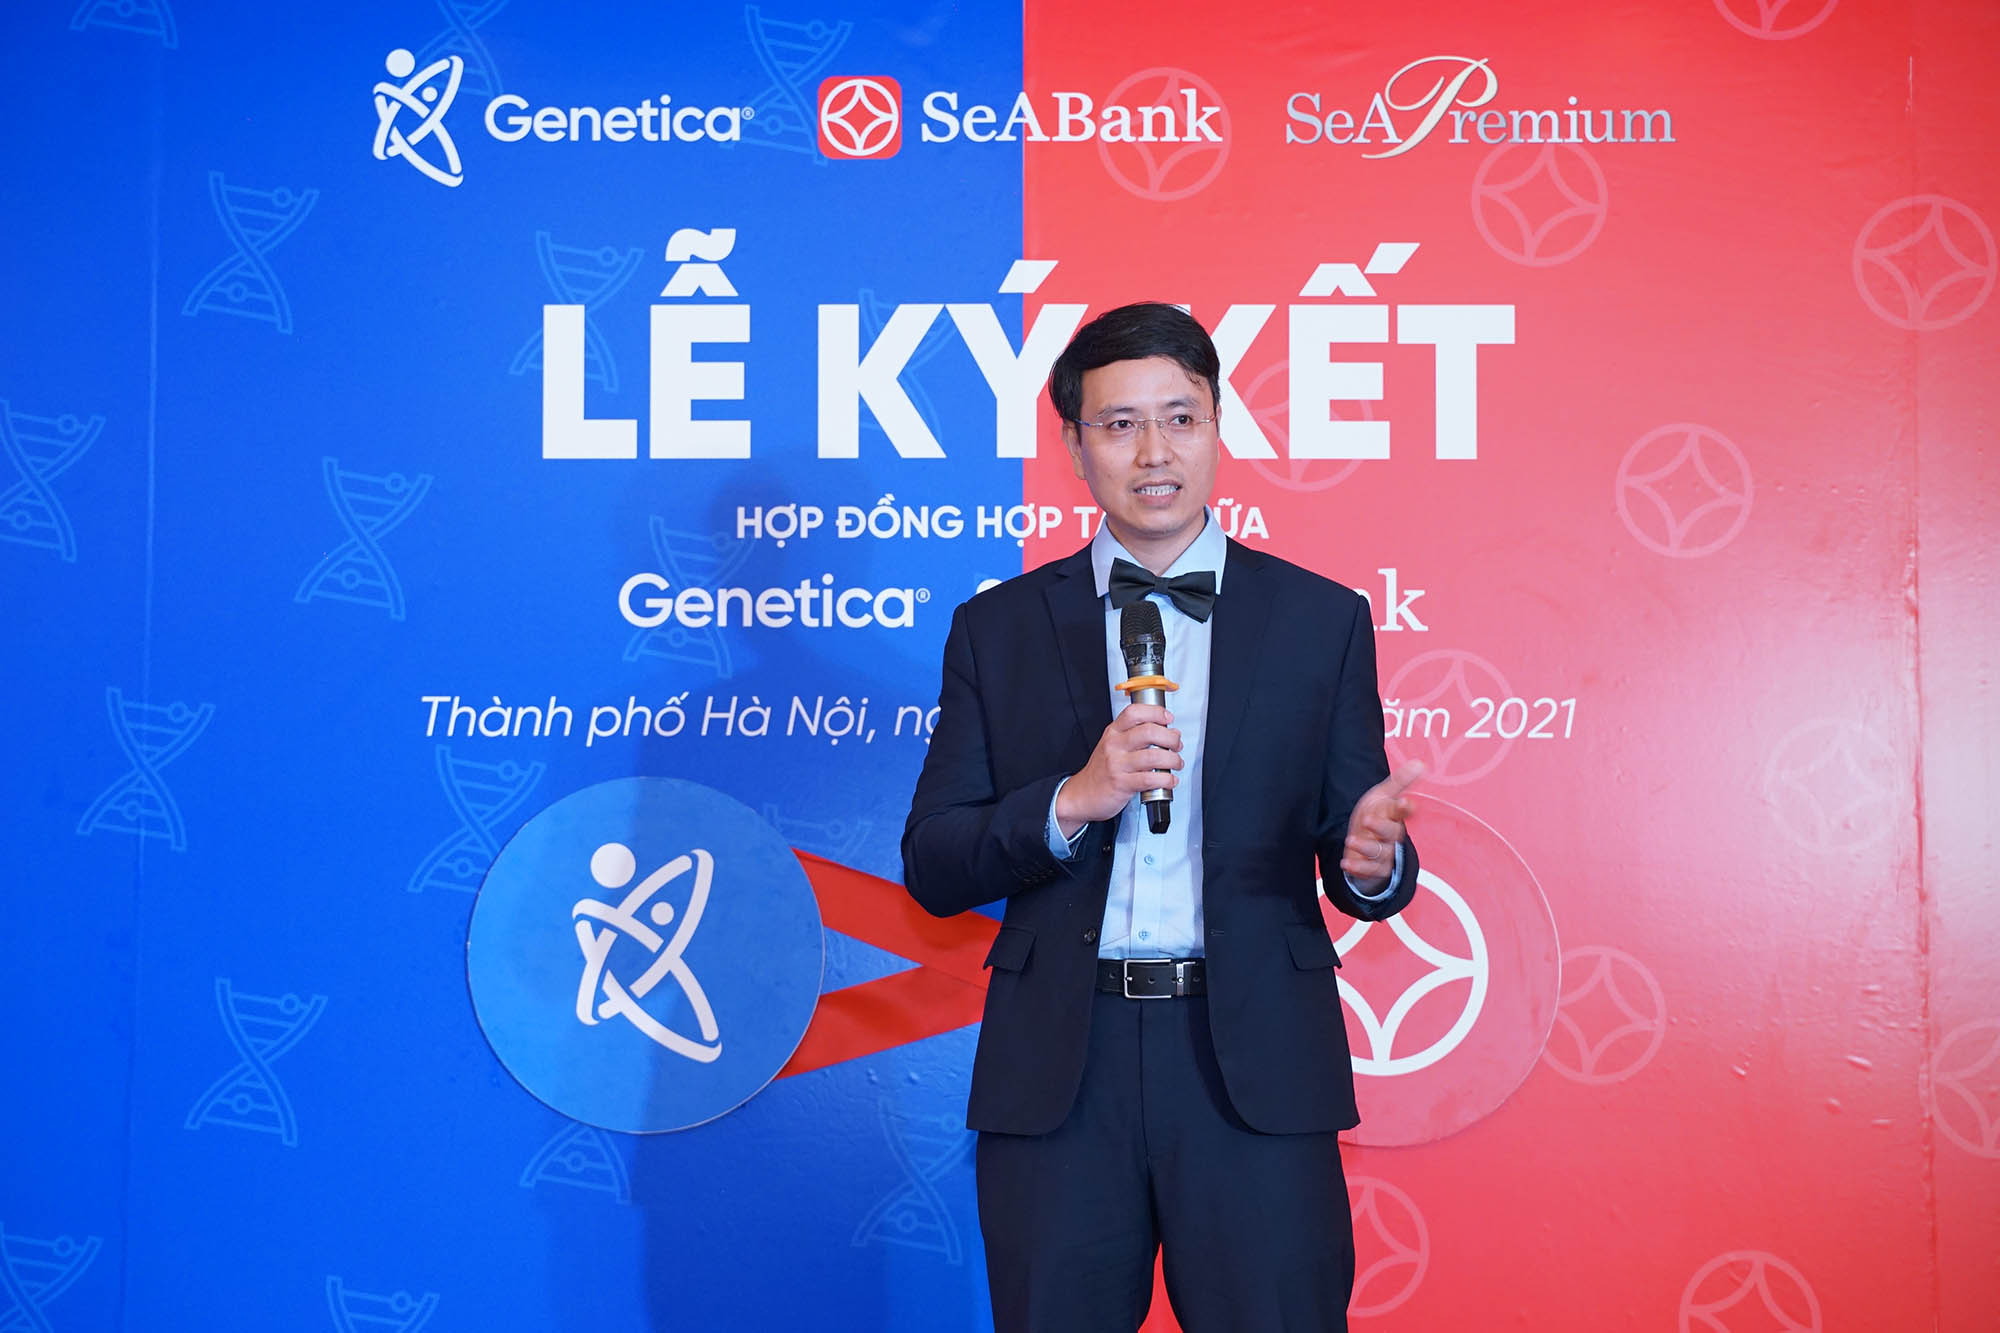 Genetica hợp tác chiến lược cùng SeABank: Tiên phong mang đến dịch vụ giải mã gen thông qua hệ thống ngân hàng